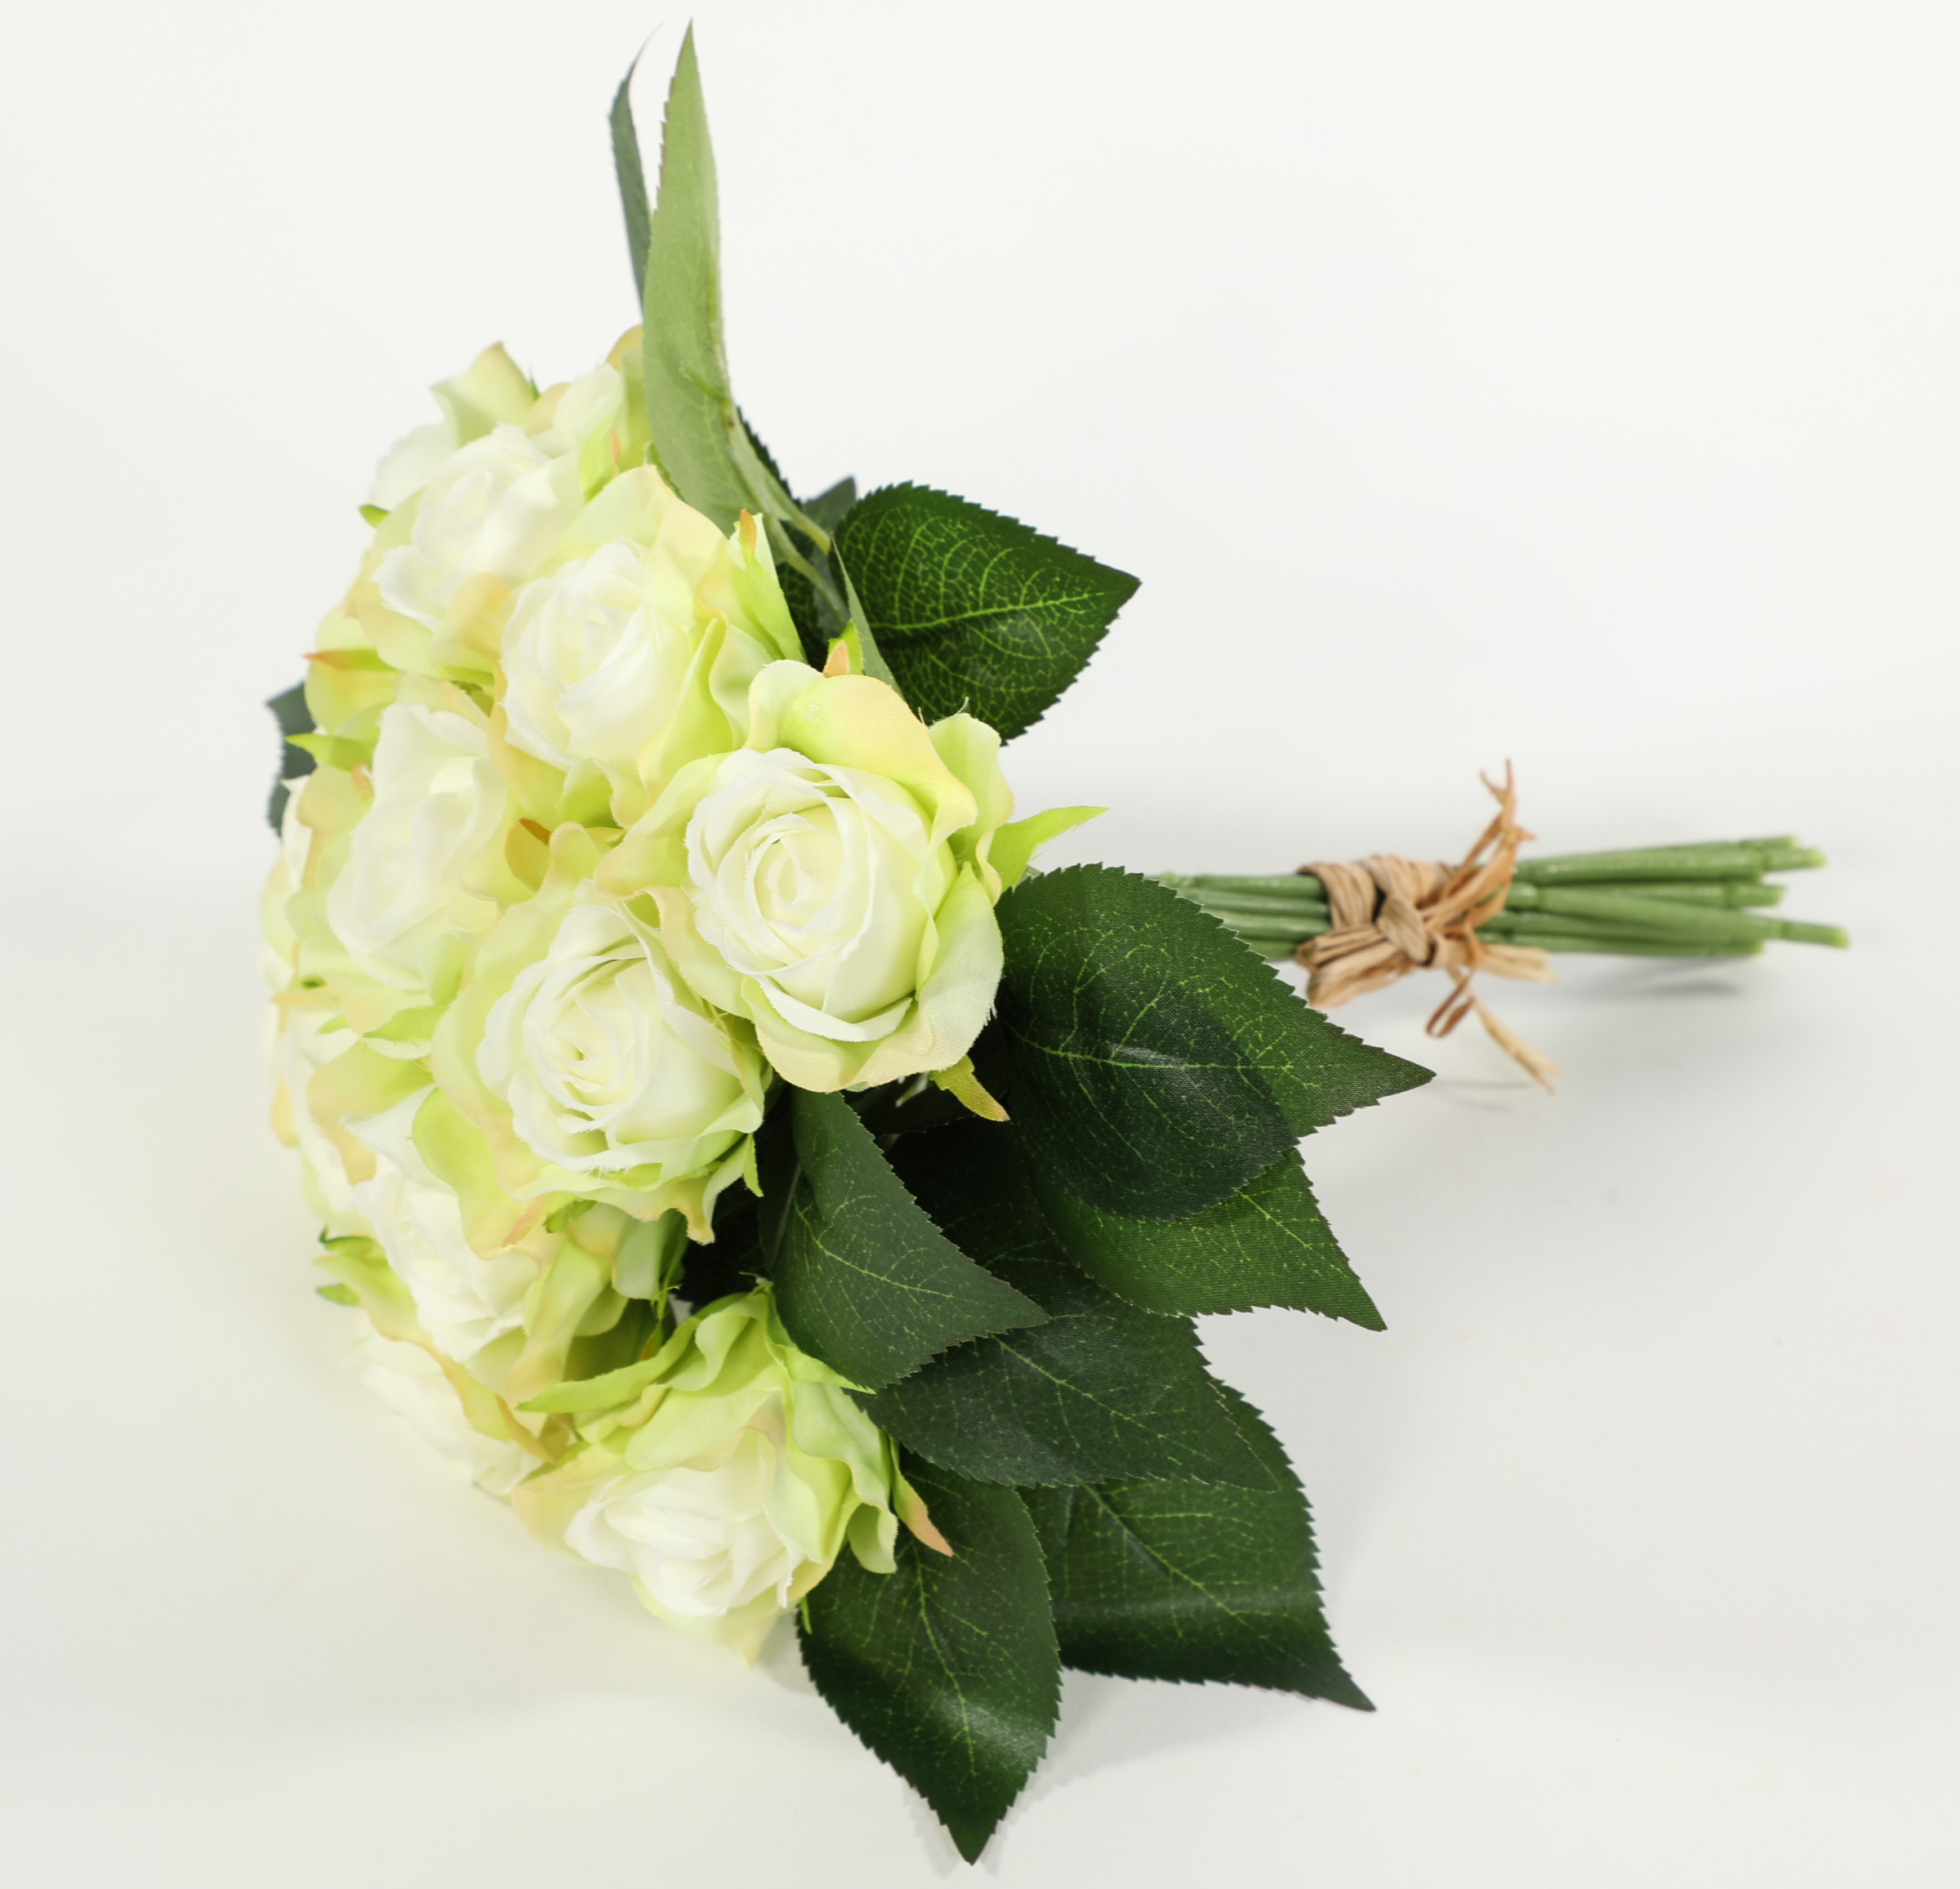 25cm Rosenstrauß Kunstblumen Strauß künstlicher CG mit 12 Rosenbouquet Rosen weiß-grün Rosen